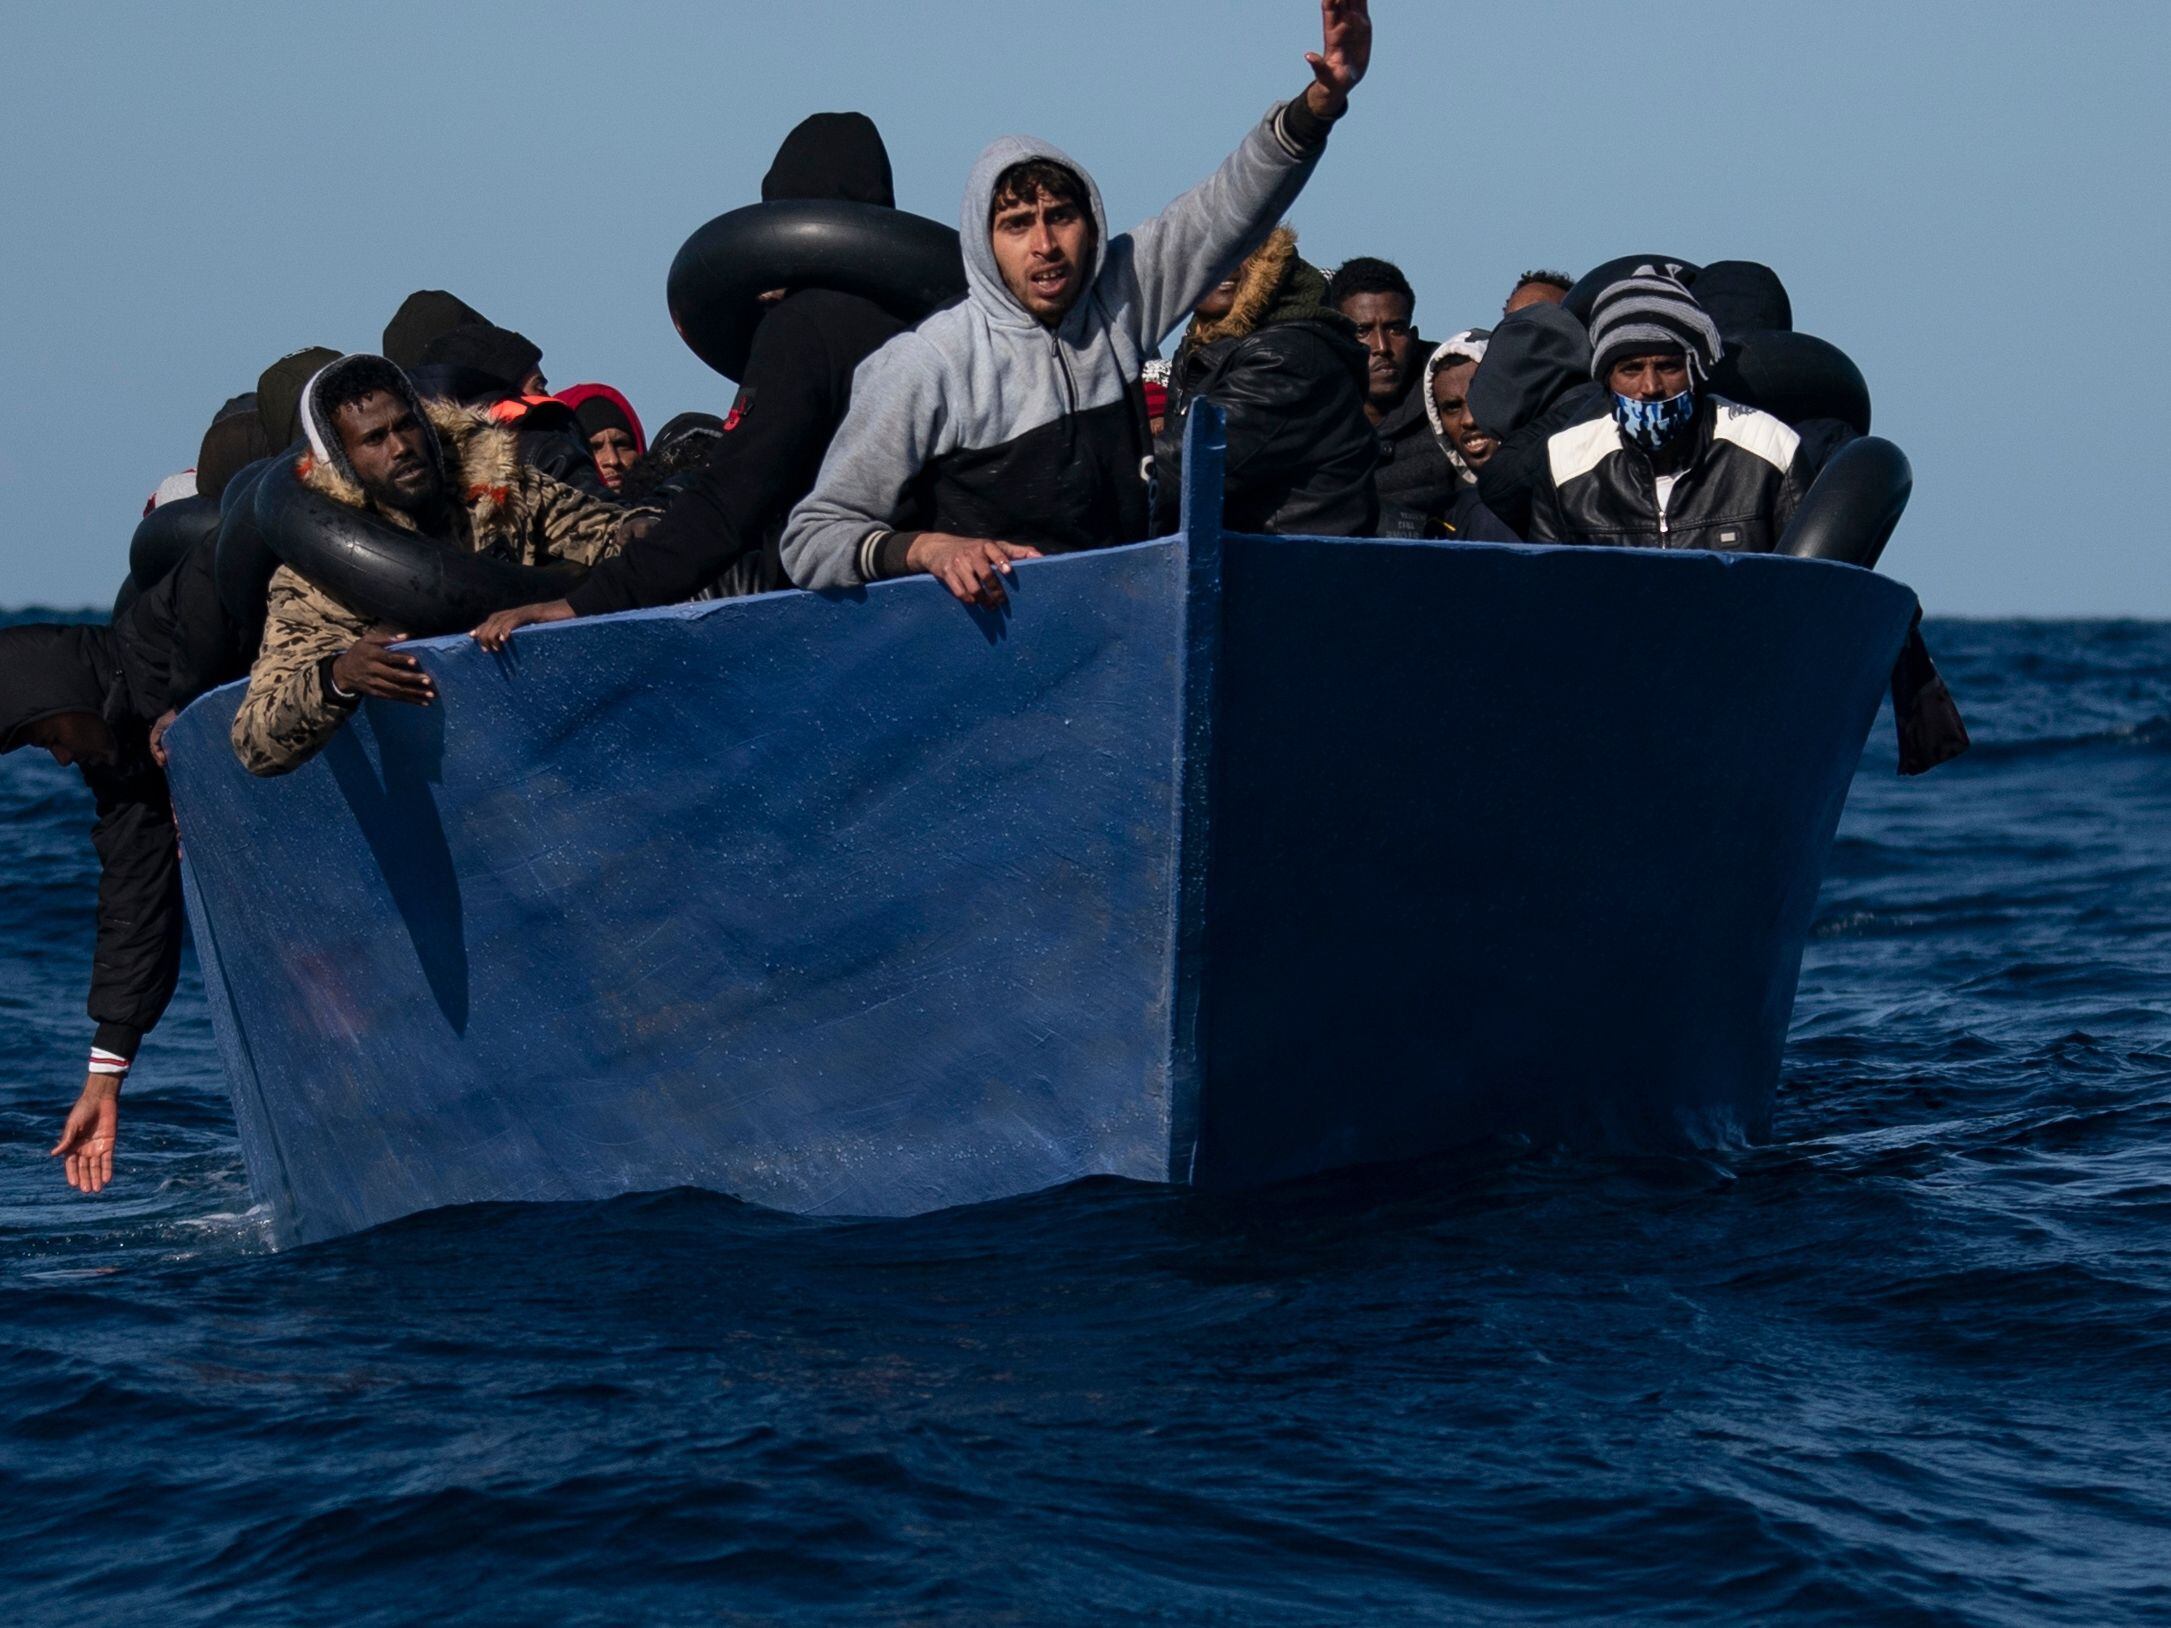 Una embarcación precaria transporta un grupo de personas migrantes, en su mayoría eritreos, en el norte de Libia en 2021. Fueron rescatados por la ONG Open Arms.